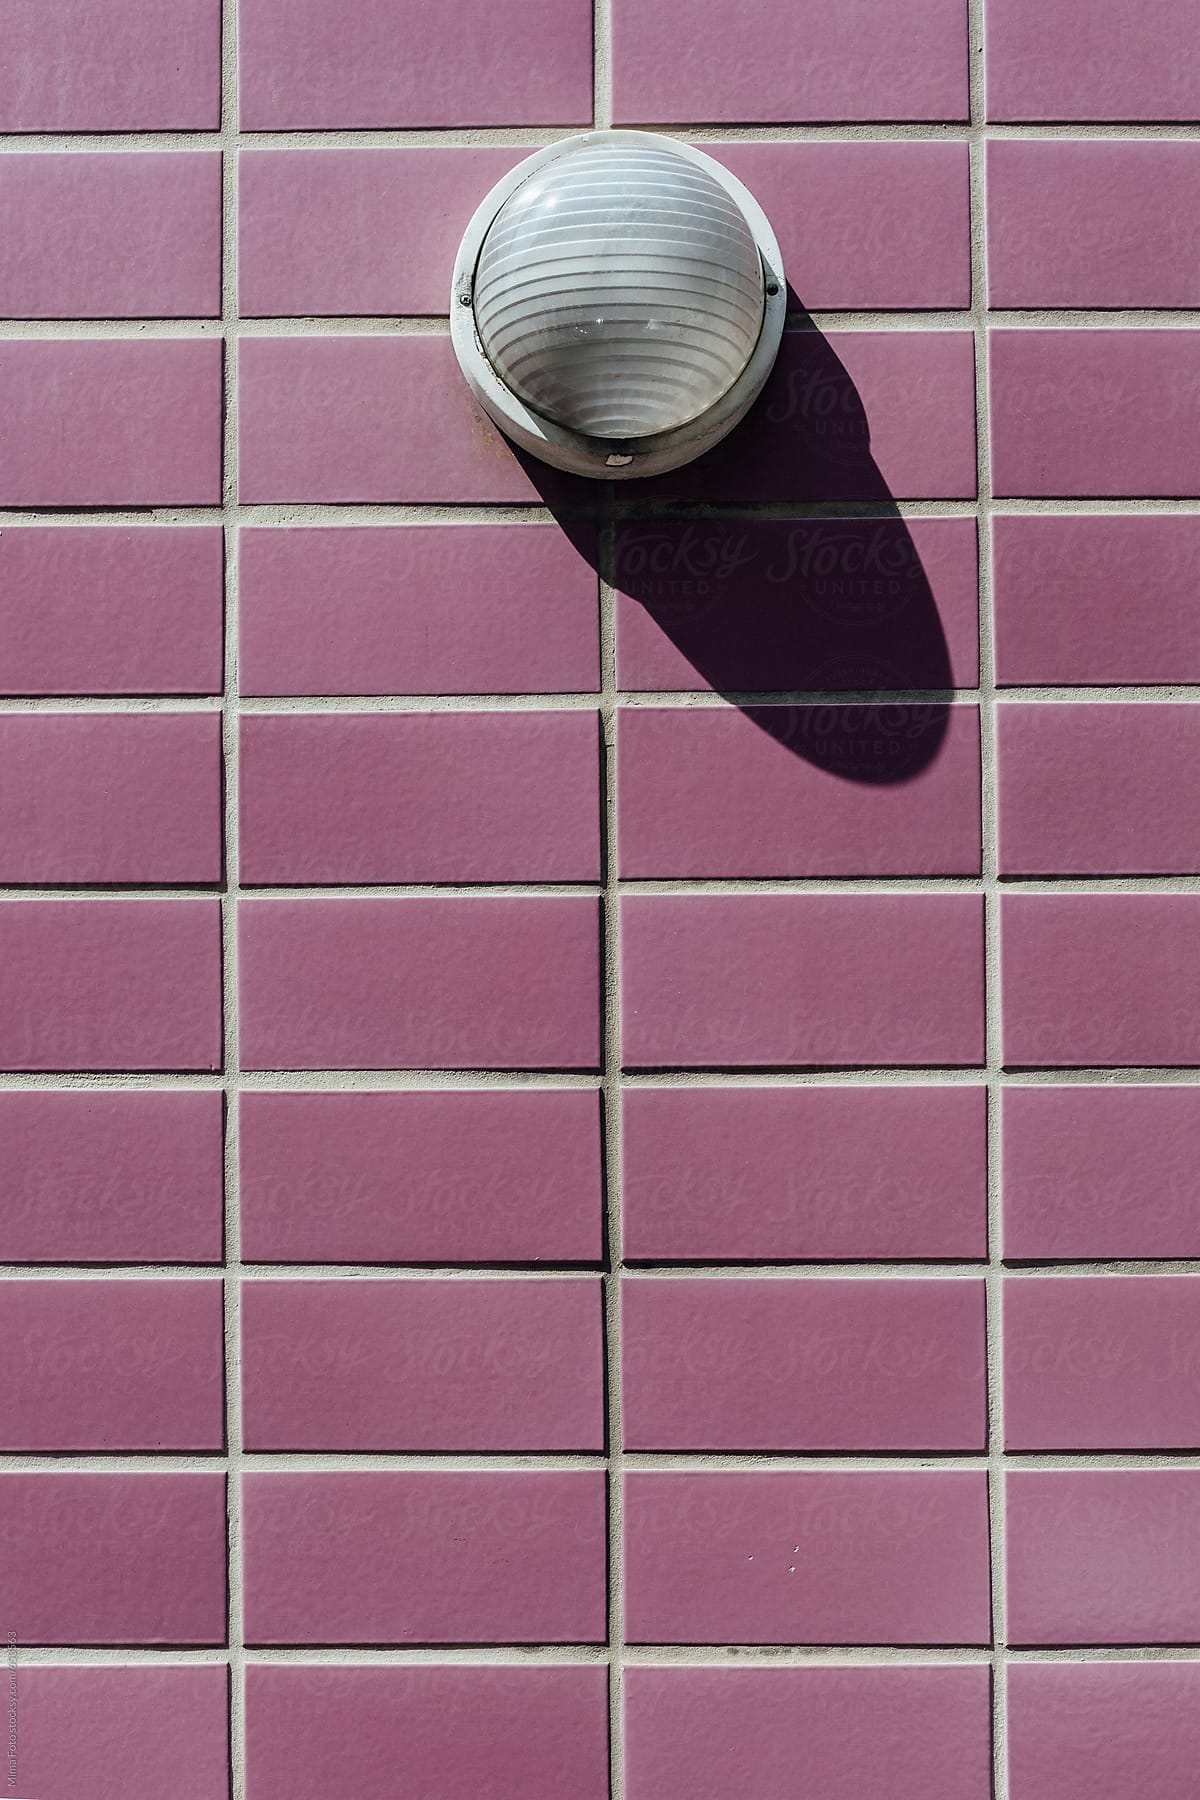 Lamp on purple tile wall